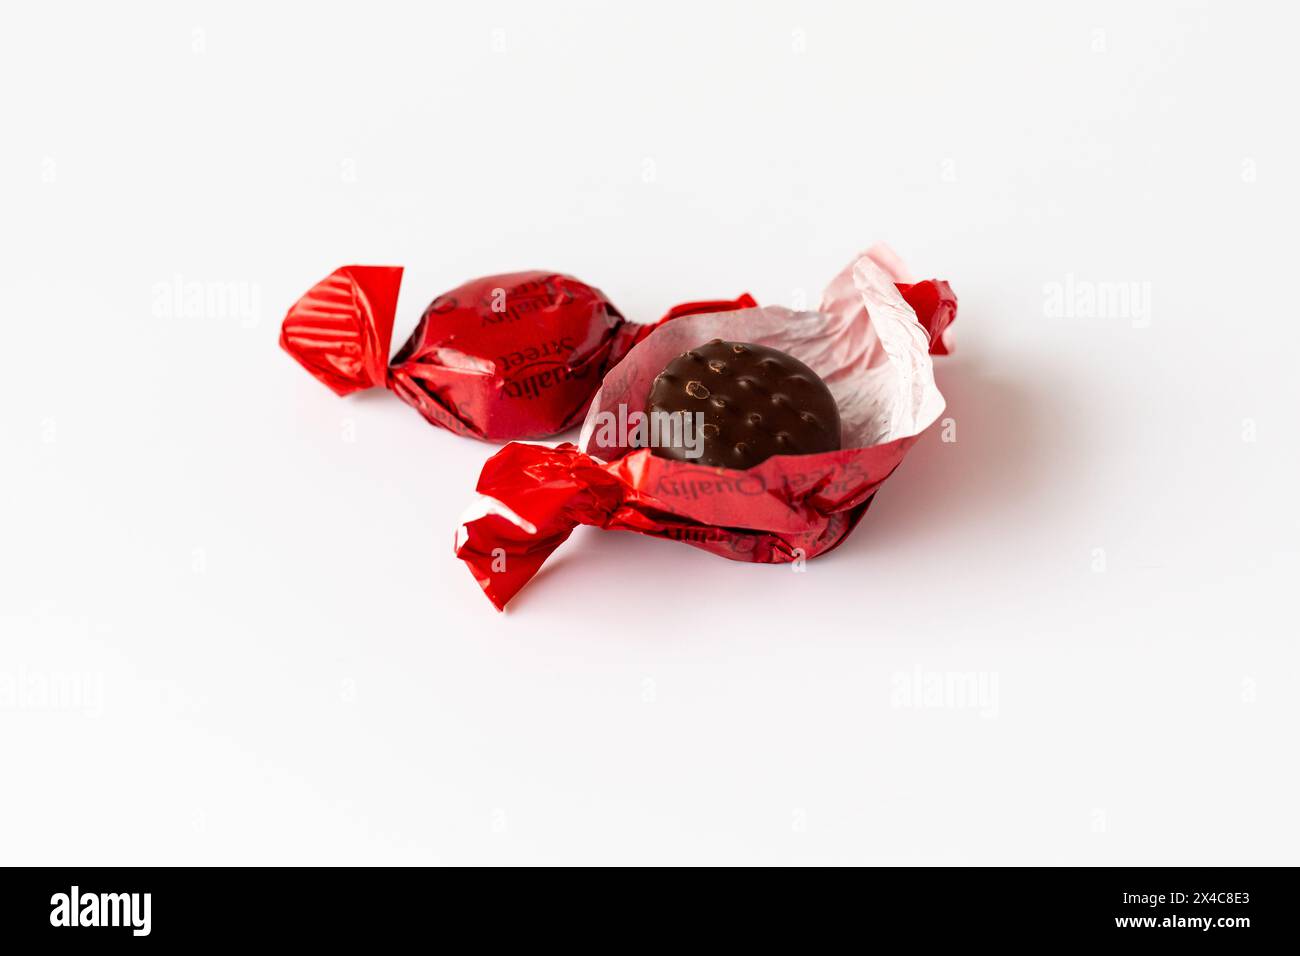 Zwei Street Sweets mit Erdbeergeschmack in den neuen recycelbaren Papierverpackungen, eine wurde geöffnet und zeigt die Schokoladensüße. Stockfoto